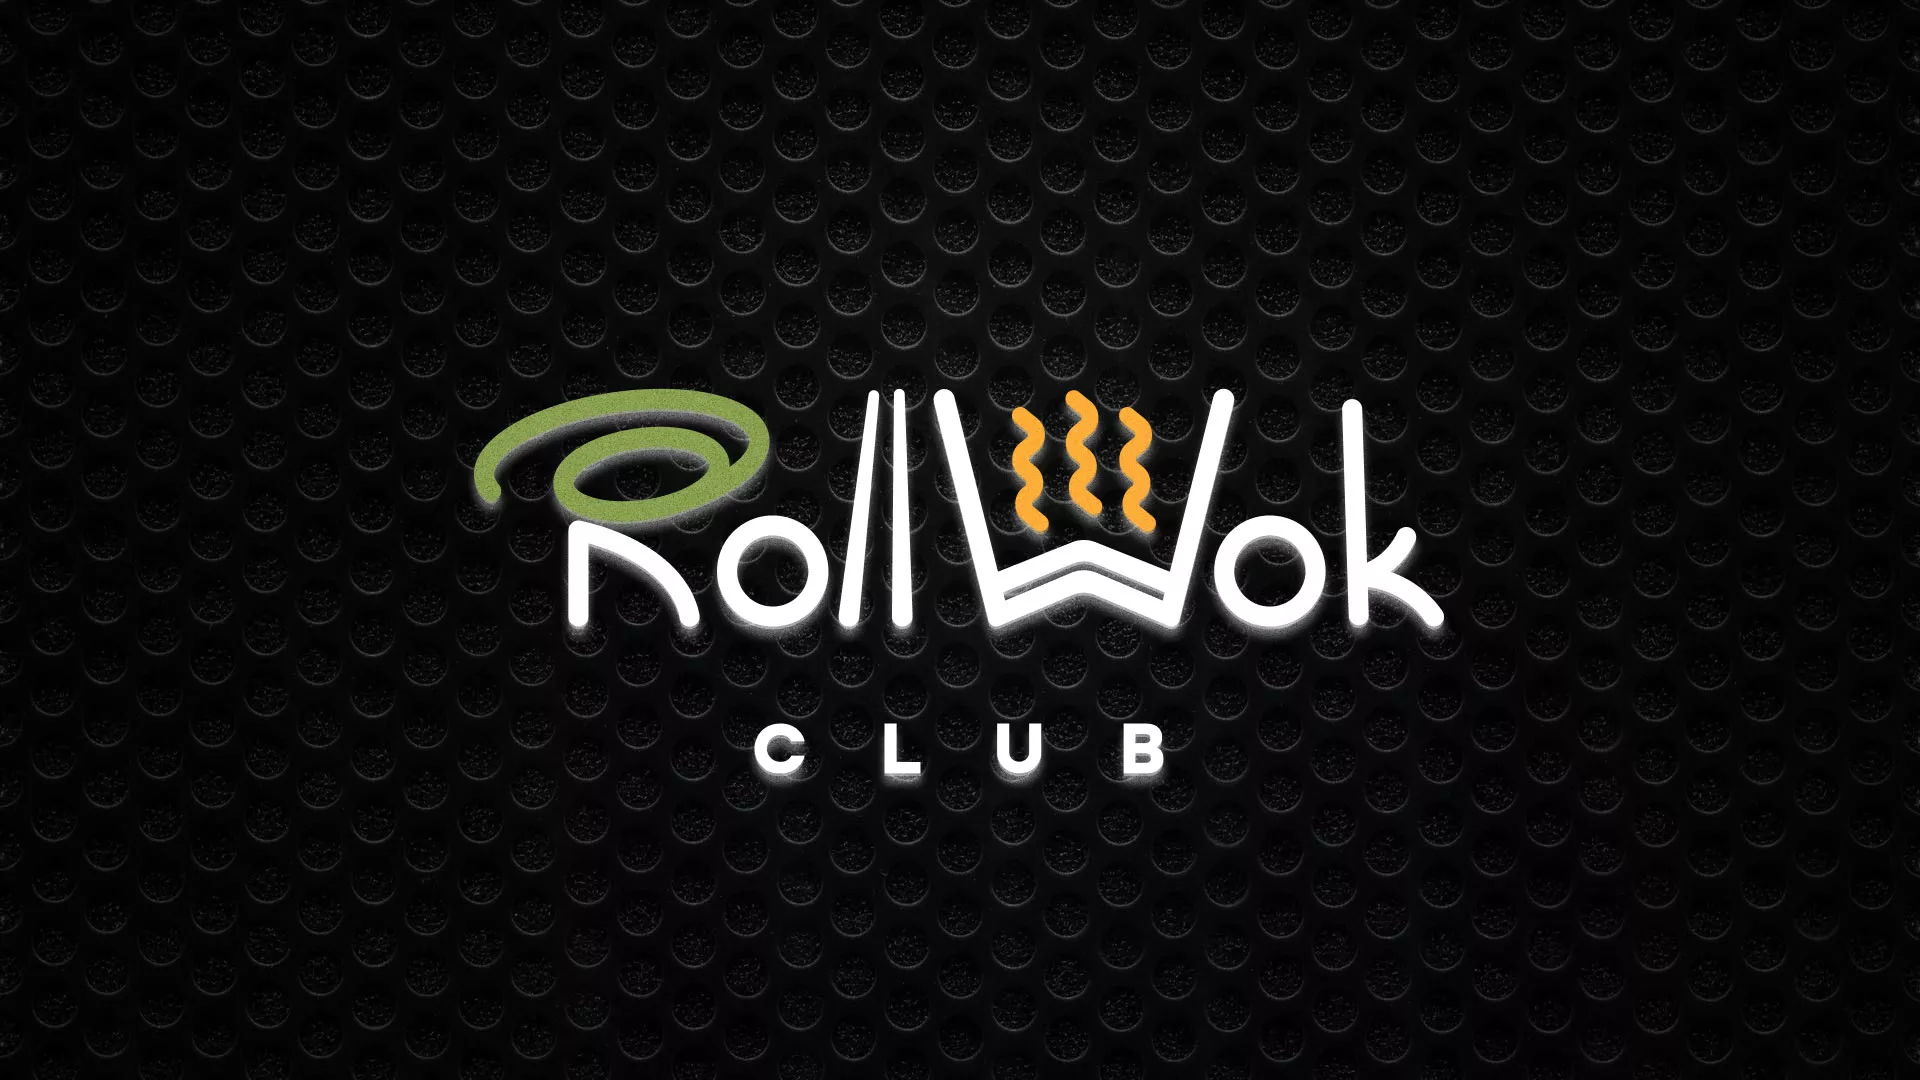 Брендирование торговых точек суши-бара «Roll Wok Club» в Гдове